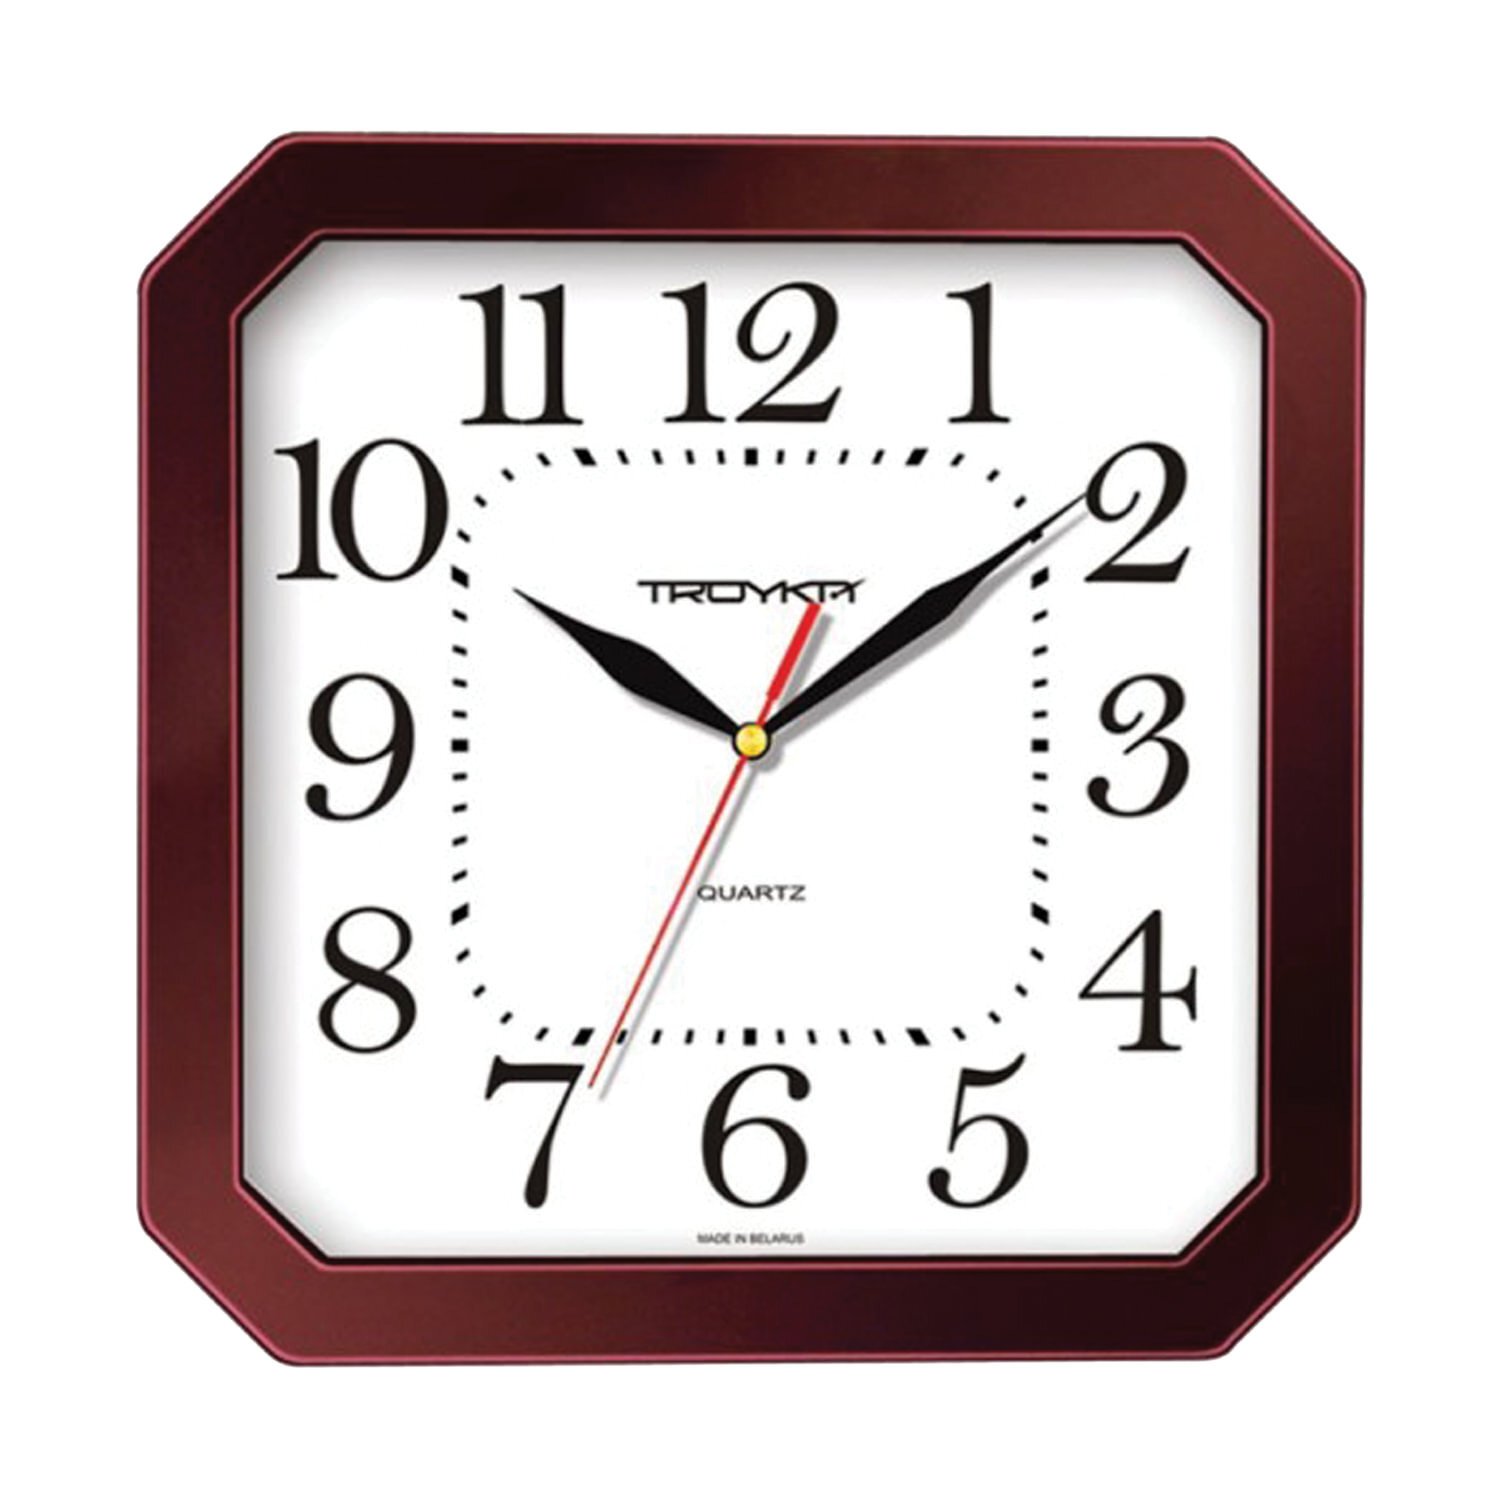 Циферблаты часов прямоугольные. Настенные часы Troyka, 29 см. Часы Troyka настенные квадратные. Часы настенные Troyka 31331316. Часы настенные Troyka 11161180.